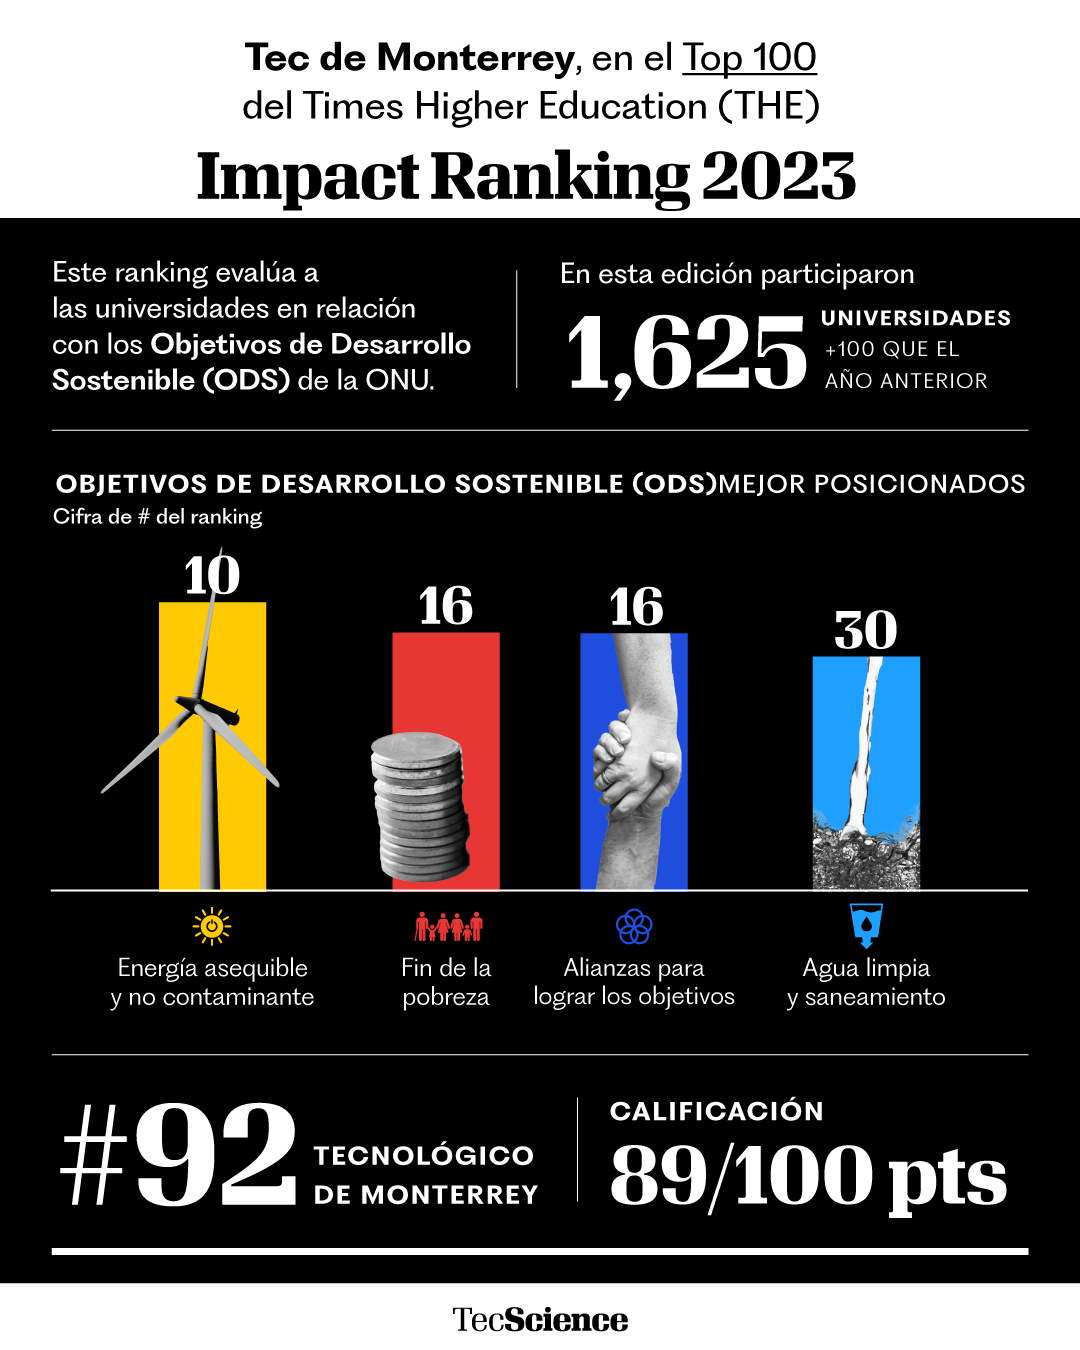 THE Impact Ranking 2023 Tec de Monterrey es una de las 100 universidades con más impacto